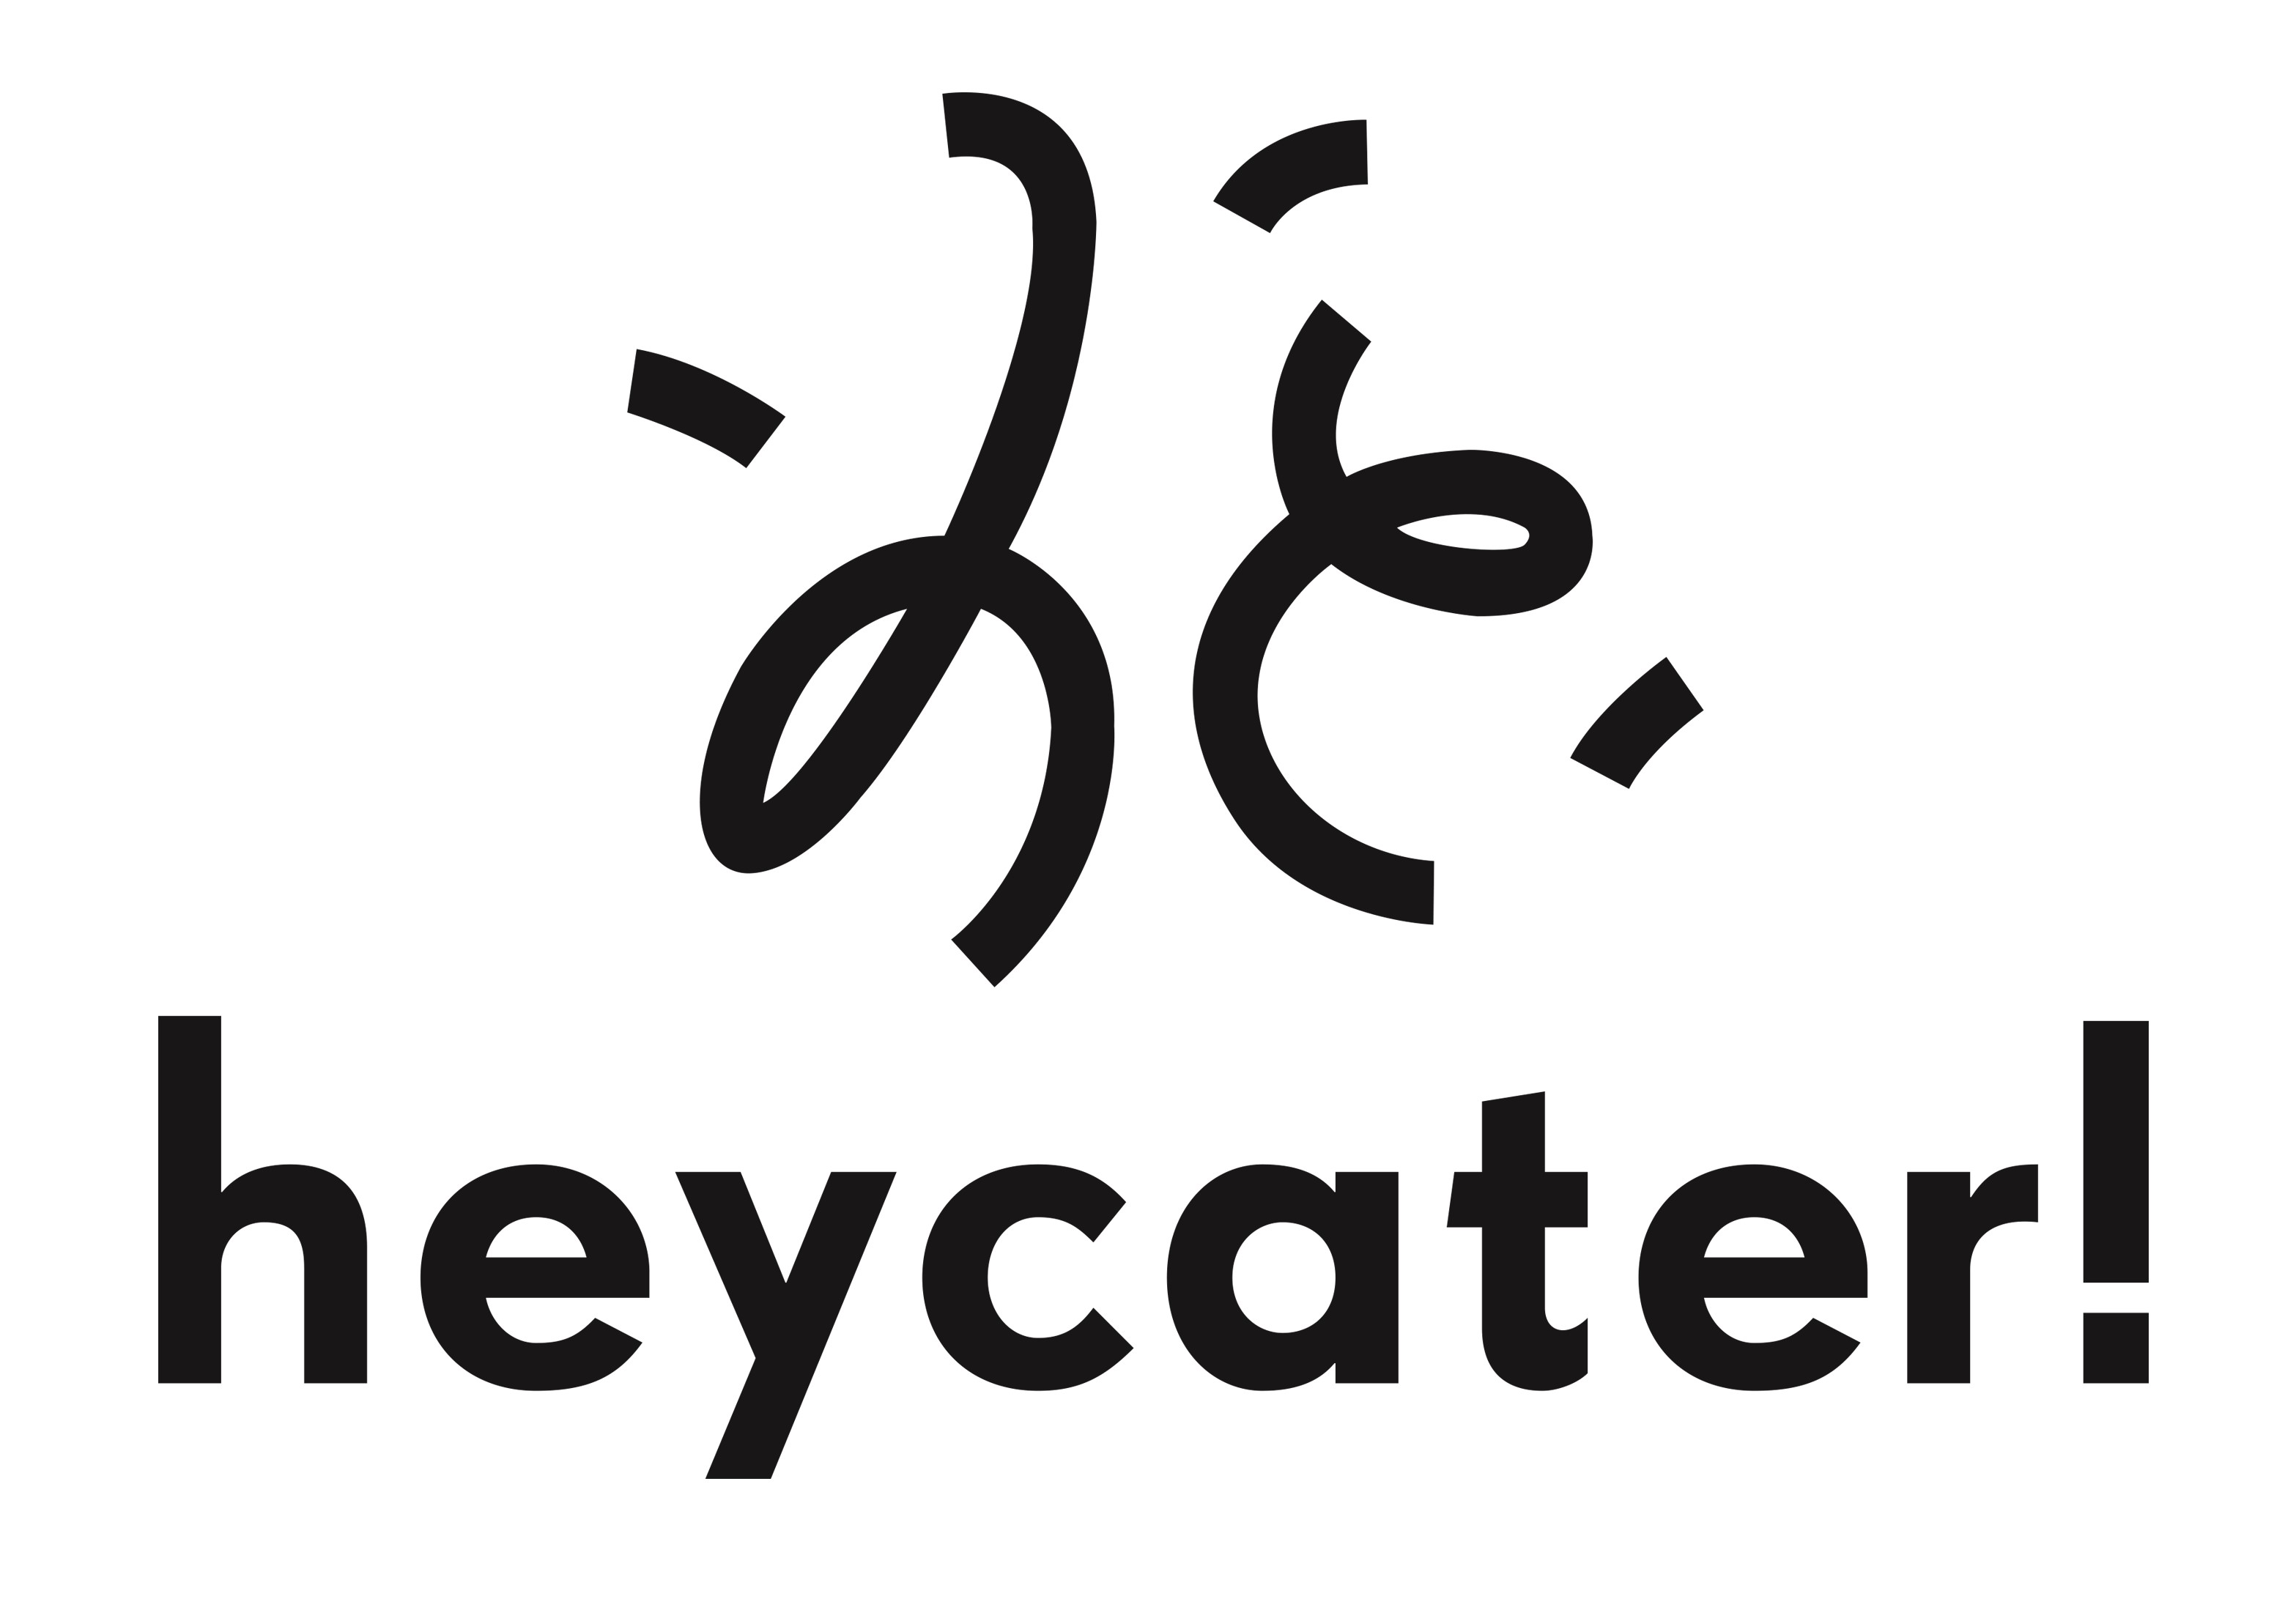 heycater!